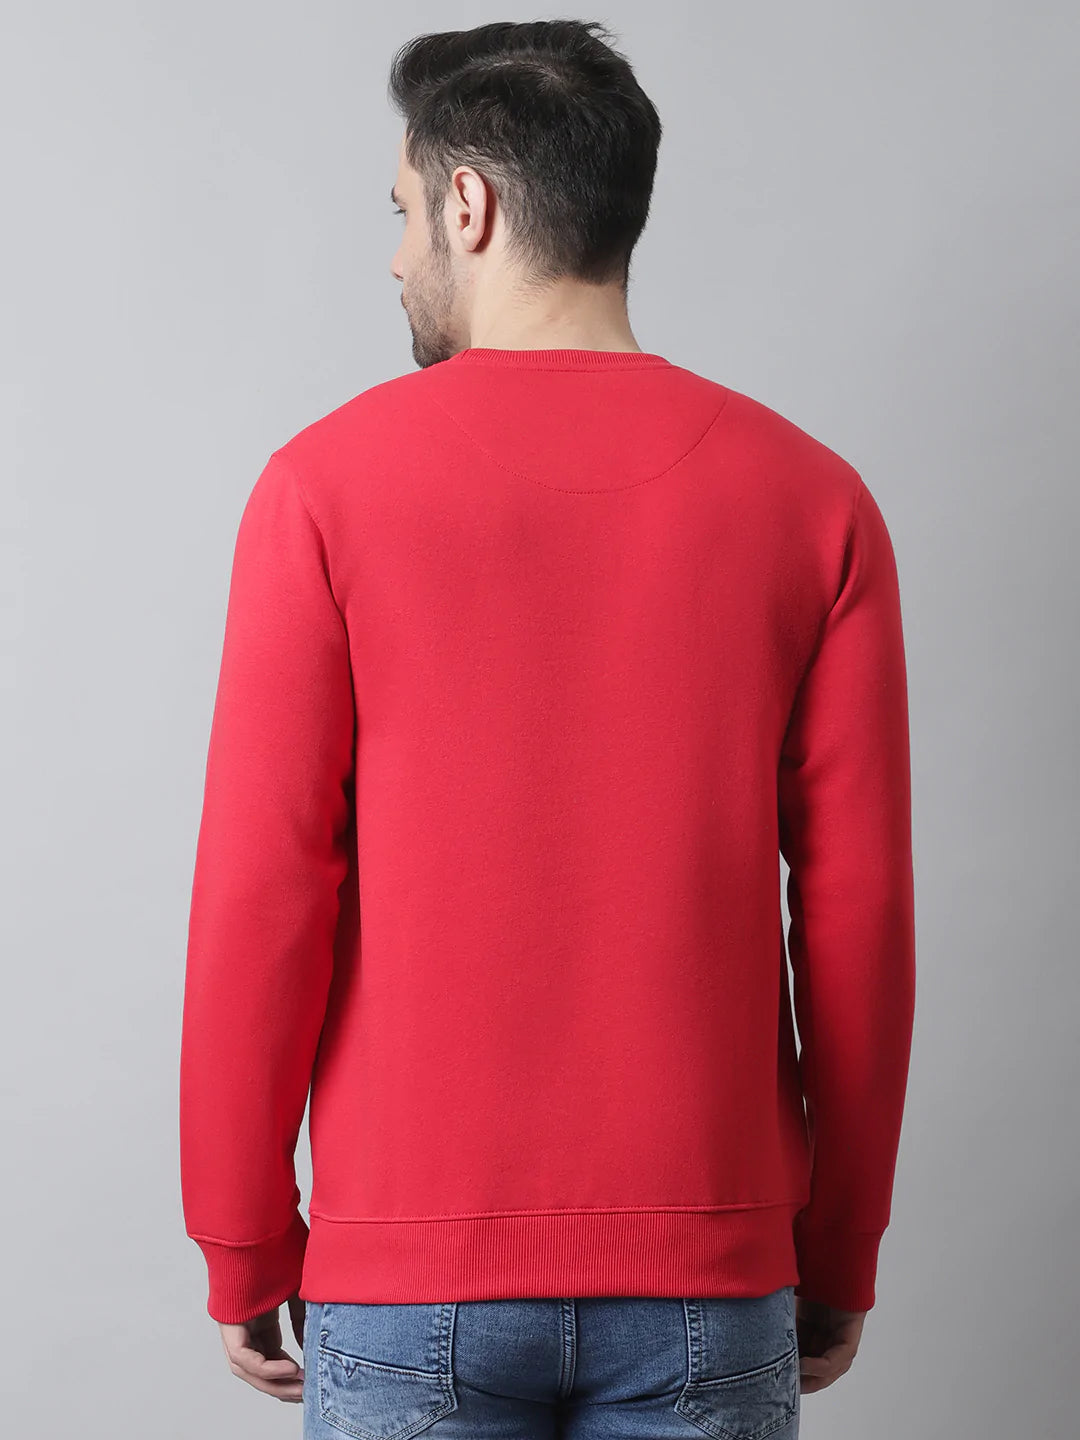 Men Typhography  Printed Pullover Fleece Sweatshirt